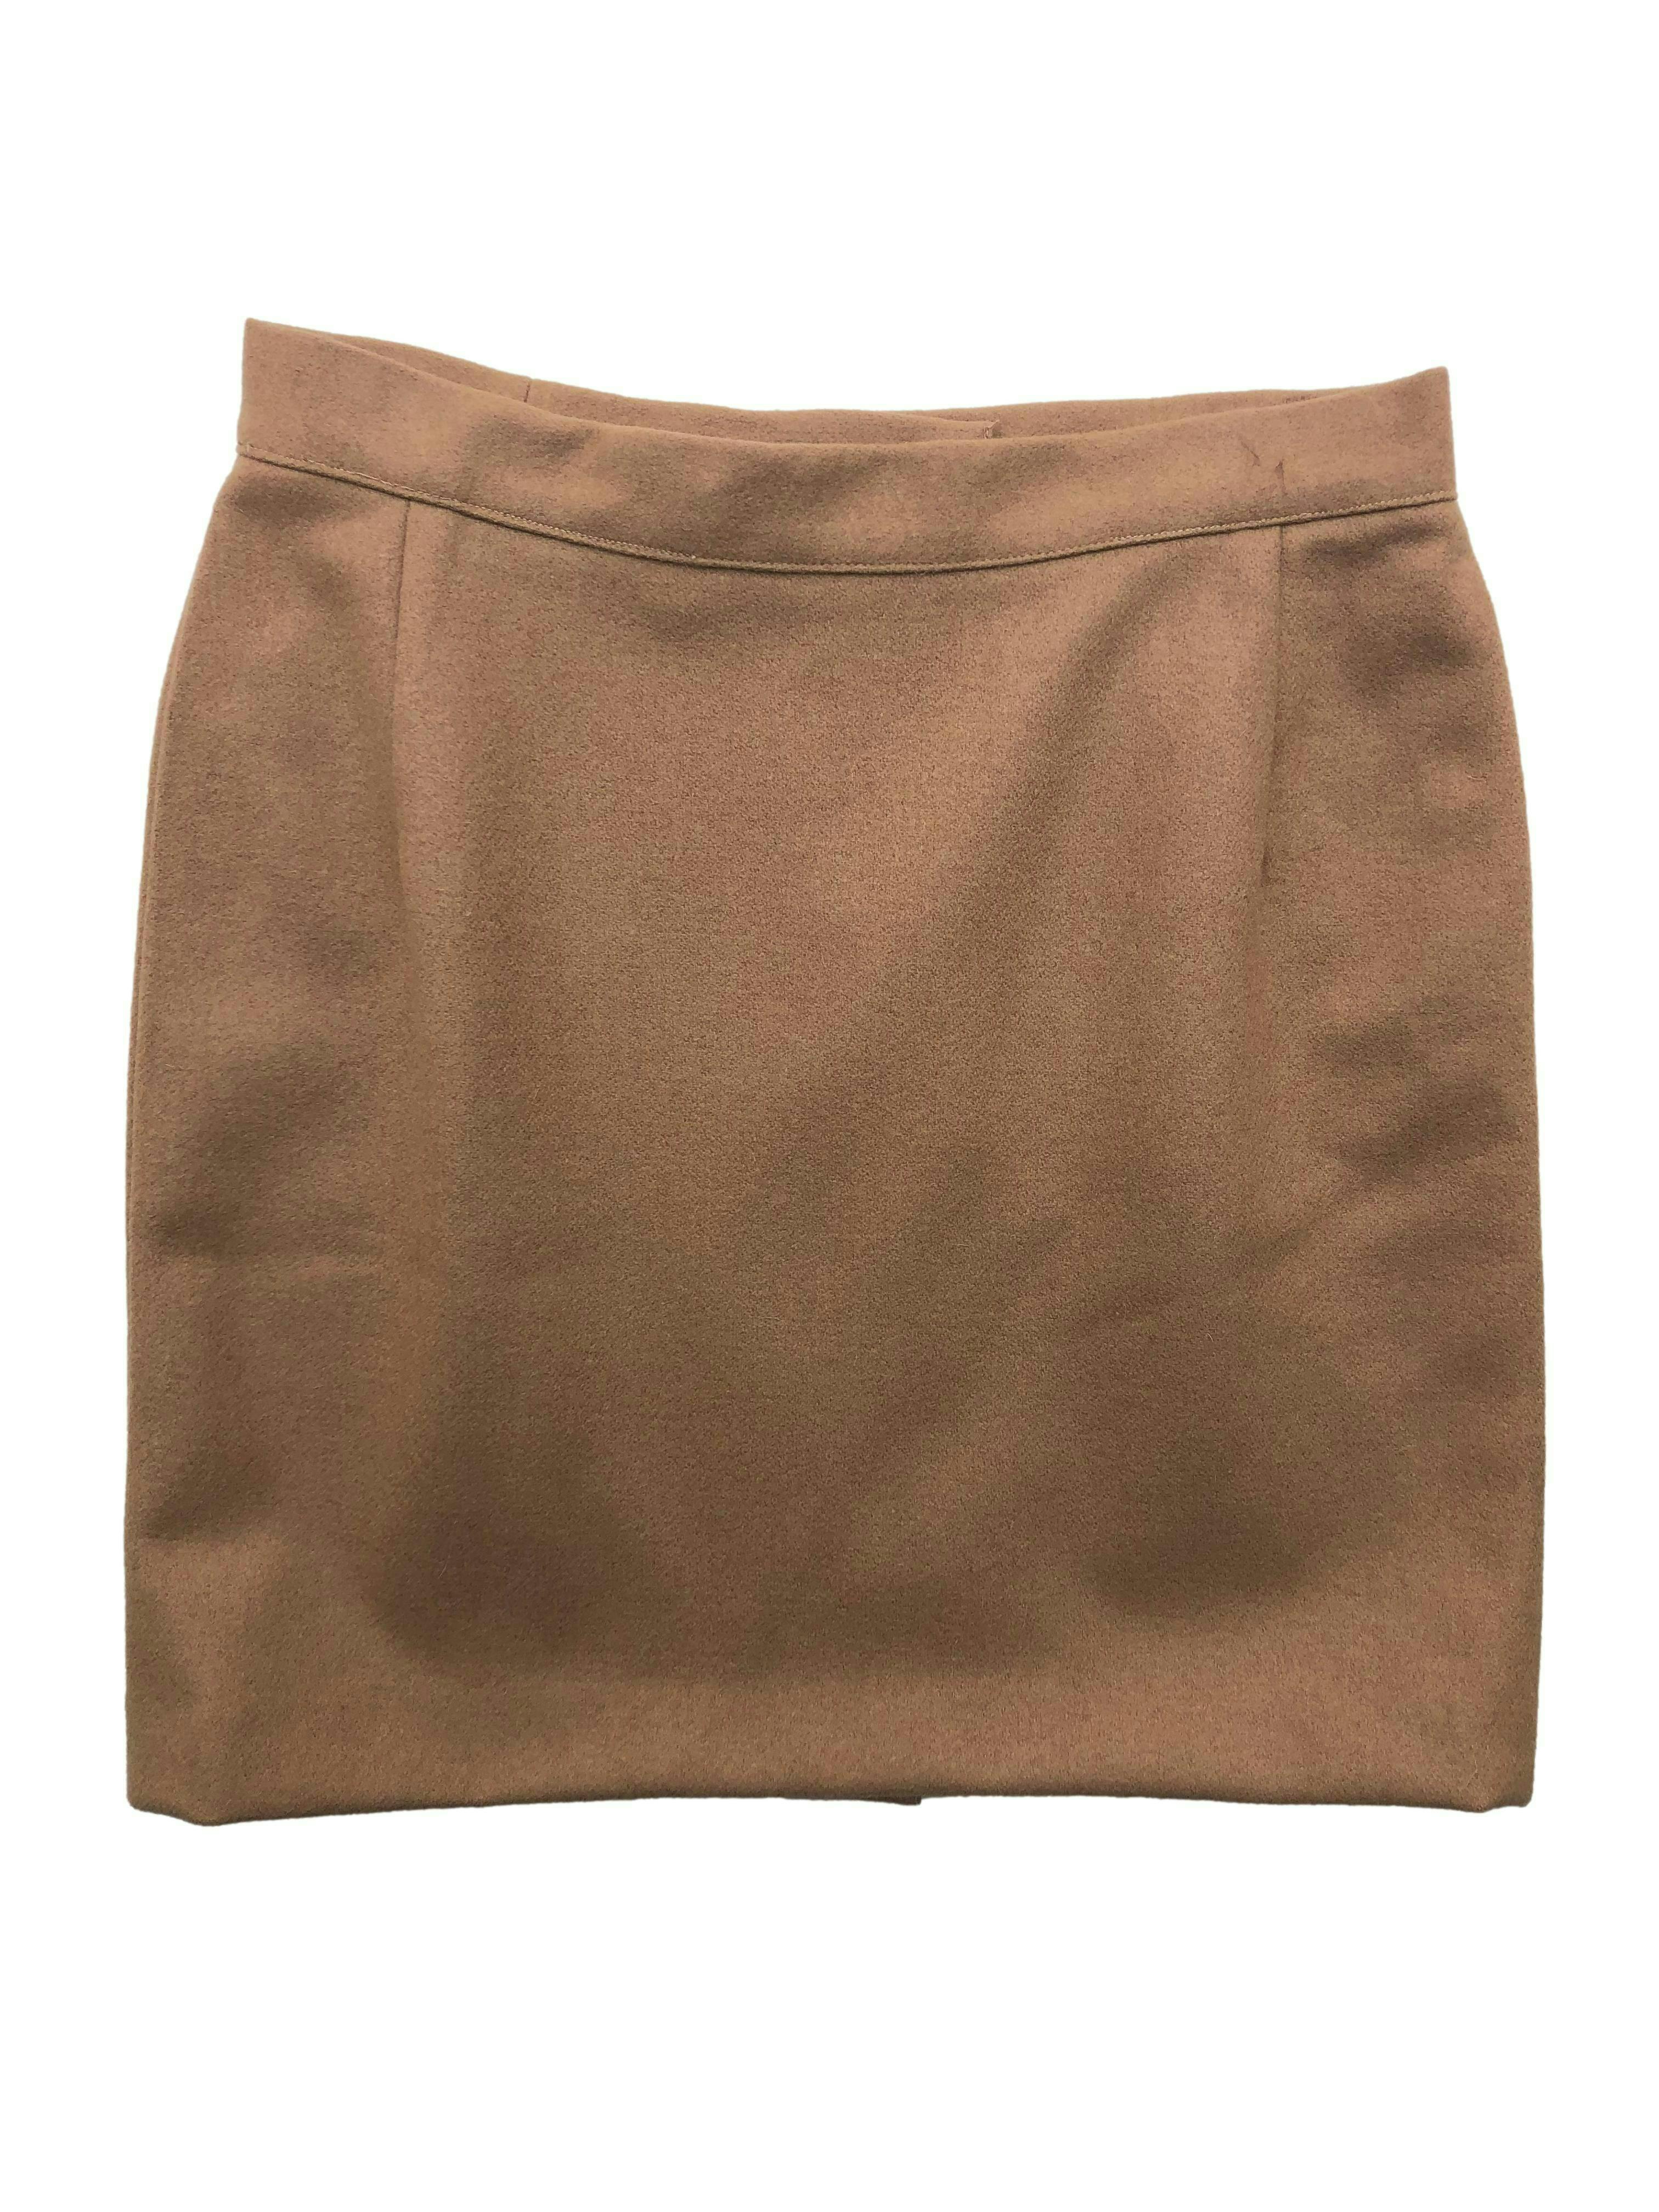 Falda mini de paño color camel, con pinzas y cierre posterior. Cintura 76cm, Largo 45cm.